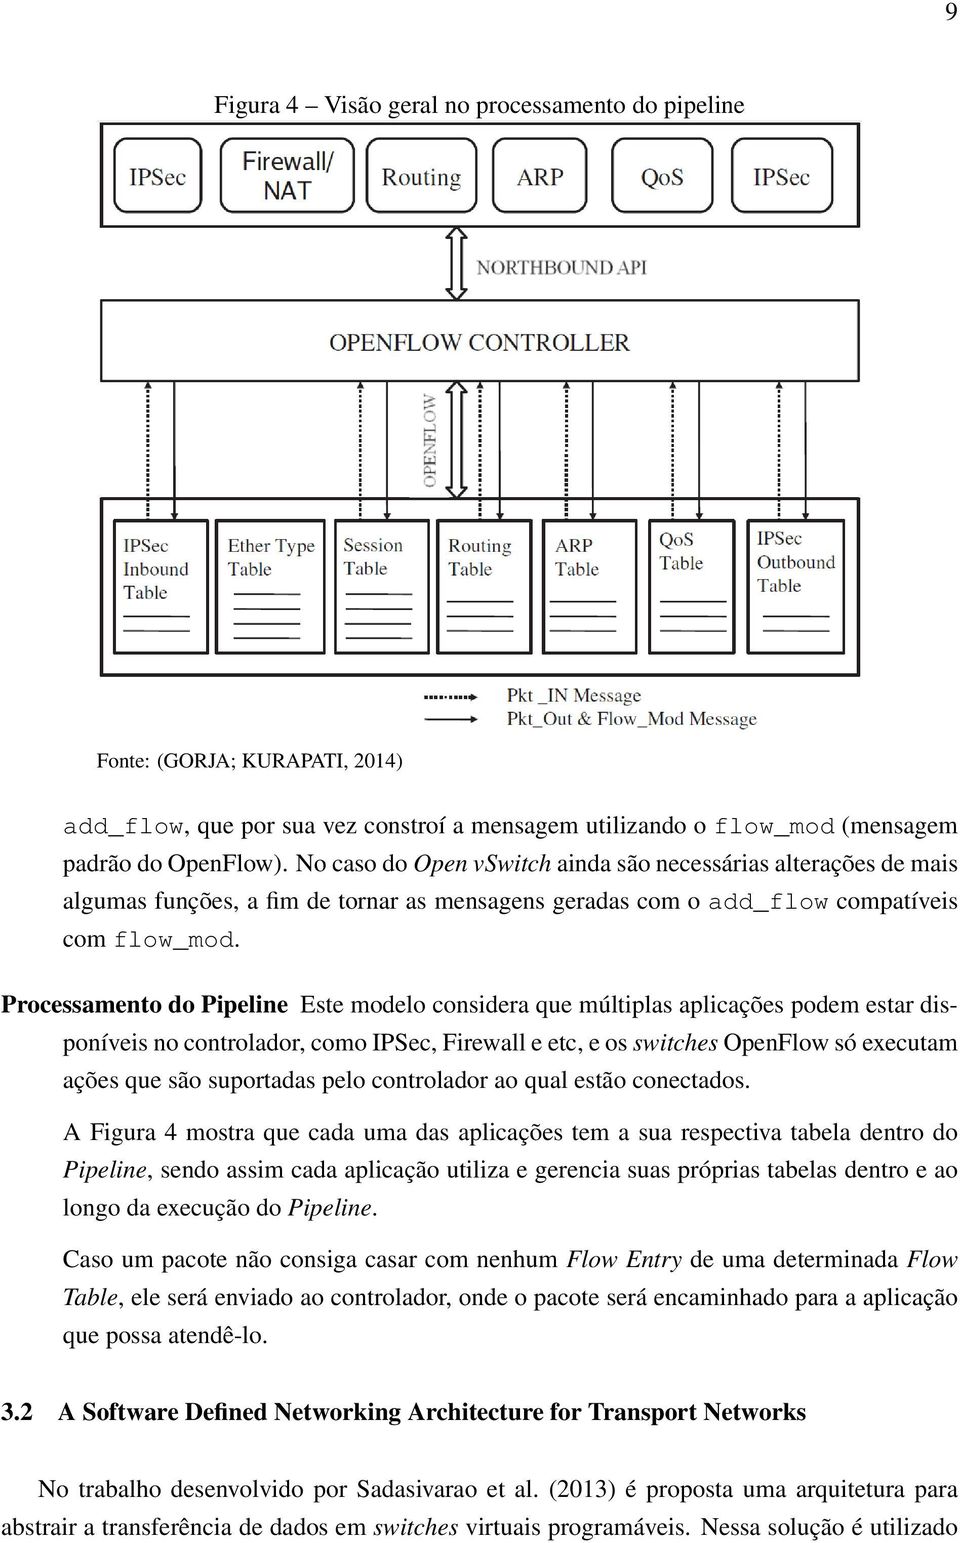 Processamento do Pipeline Este modelo considera que múltiplas aplicações podem estar disponíveis no controlador, como IPSec, Firewall e etc, e os switches OpenFlow só executam ações que são